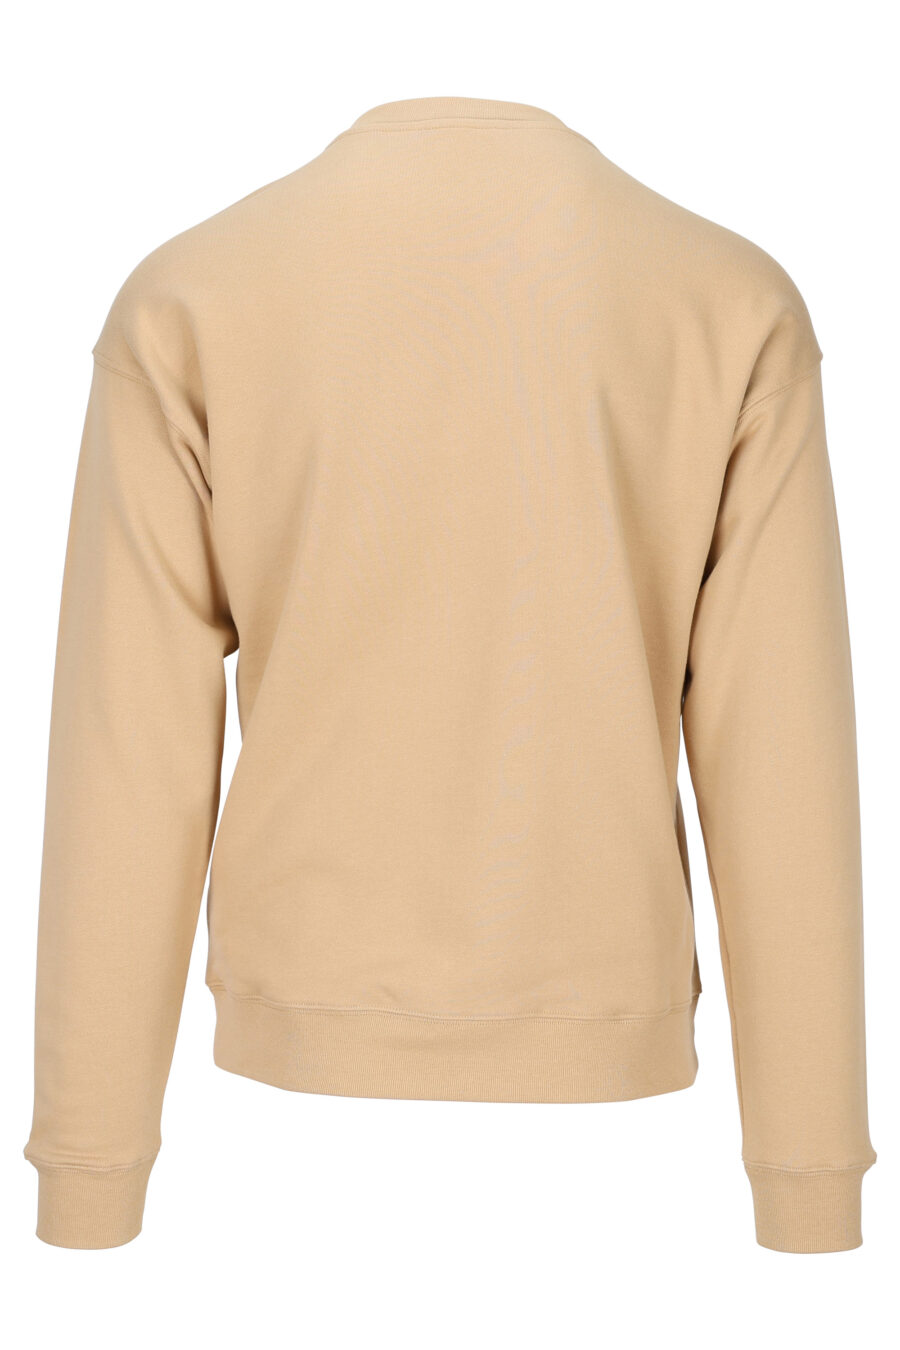 Beigefarbenes Sweatshirt mit schwarzem Maxilogo - 889316943955 1